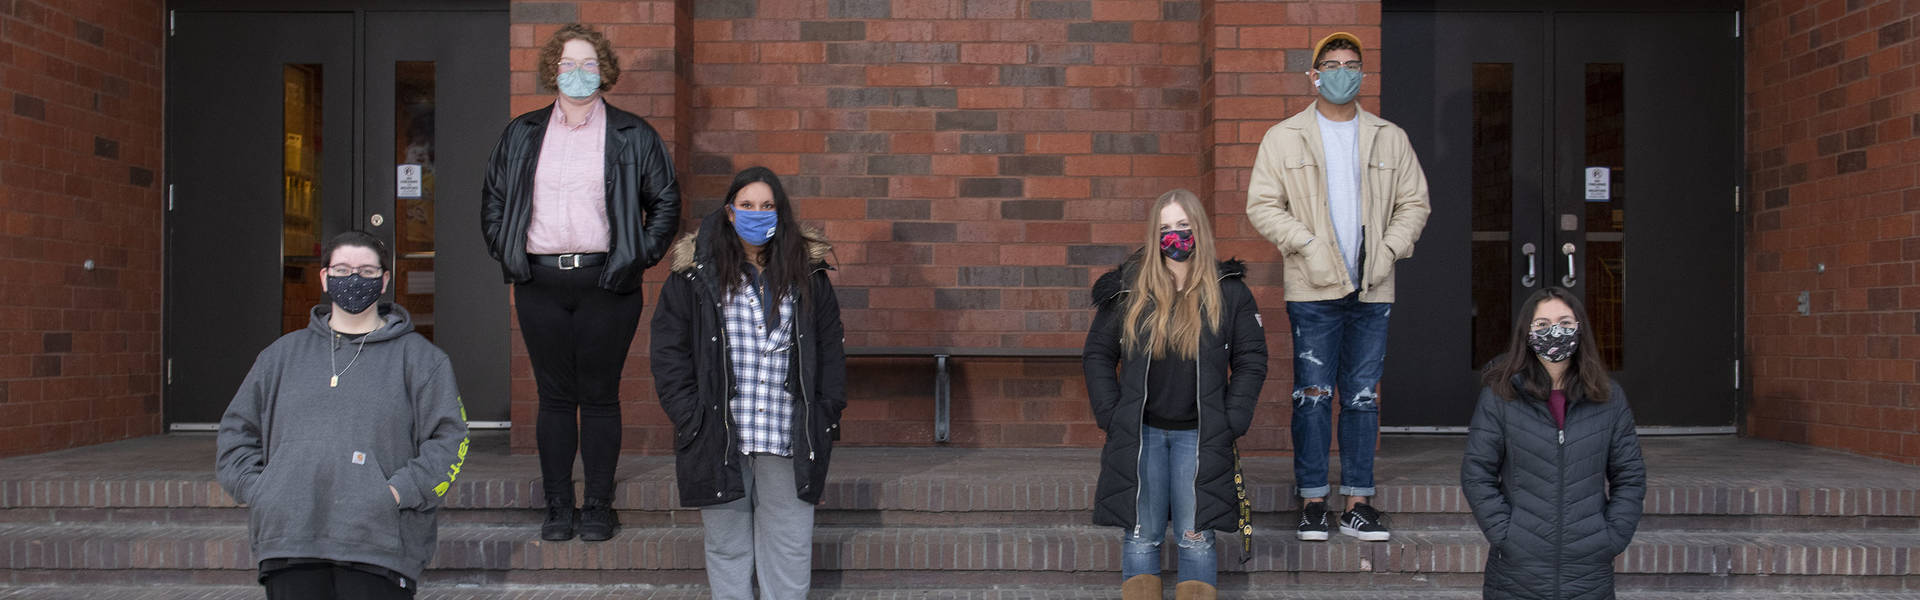 Peer Diversity Educators standing on steps wearing masks.